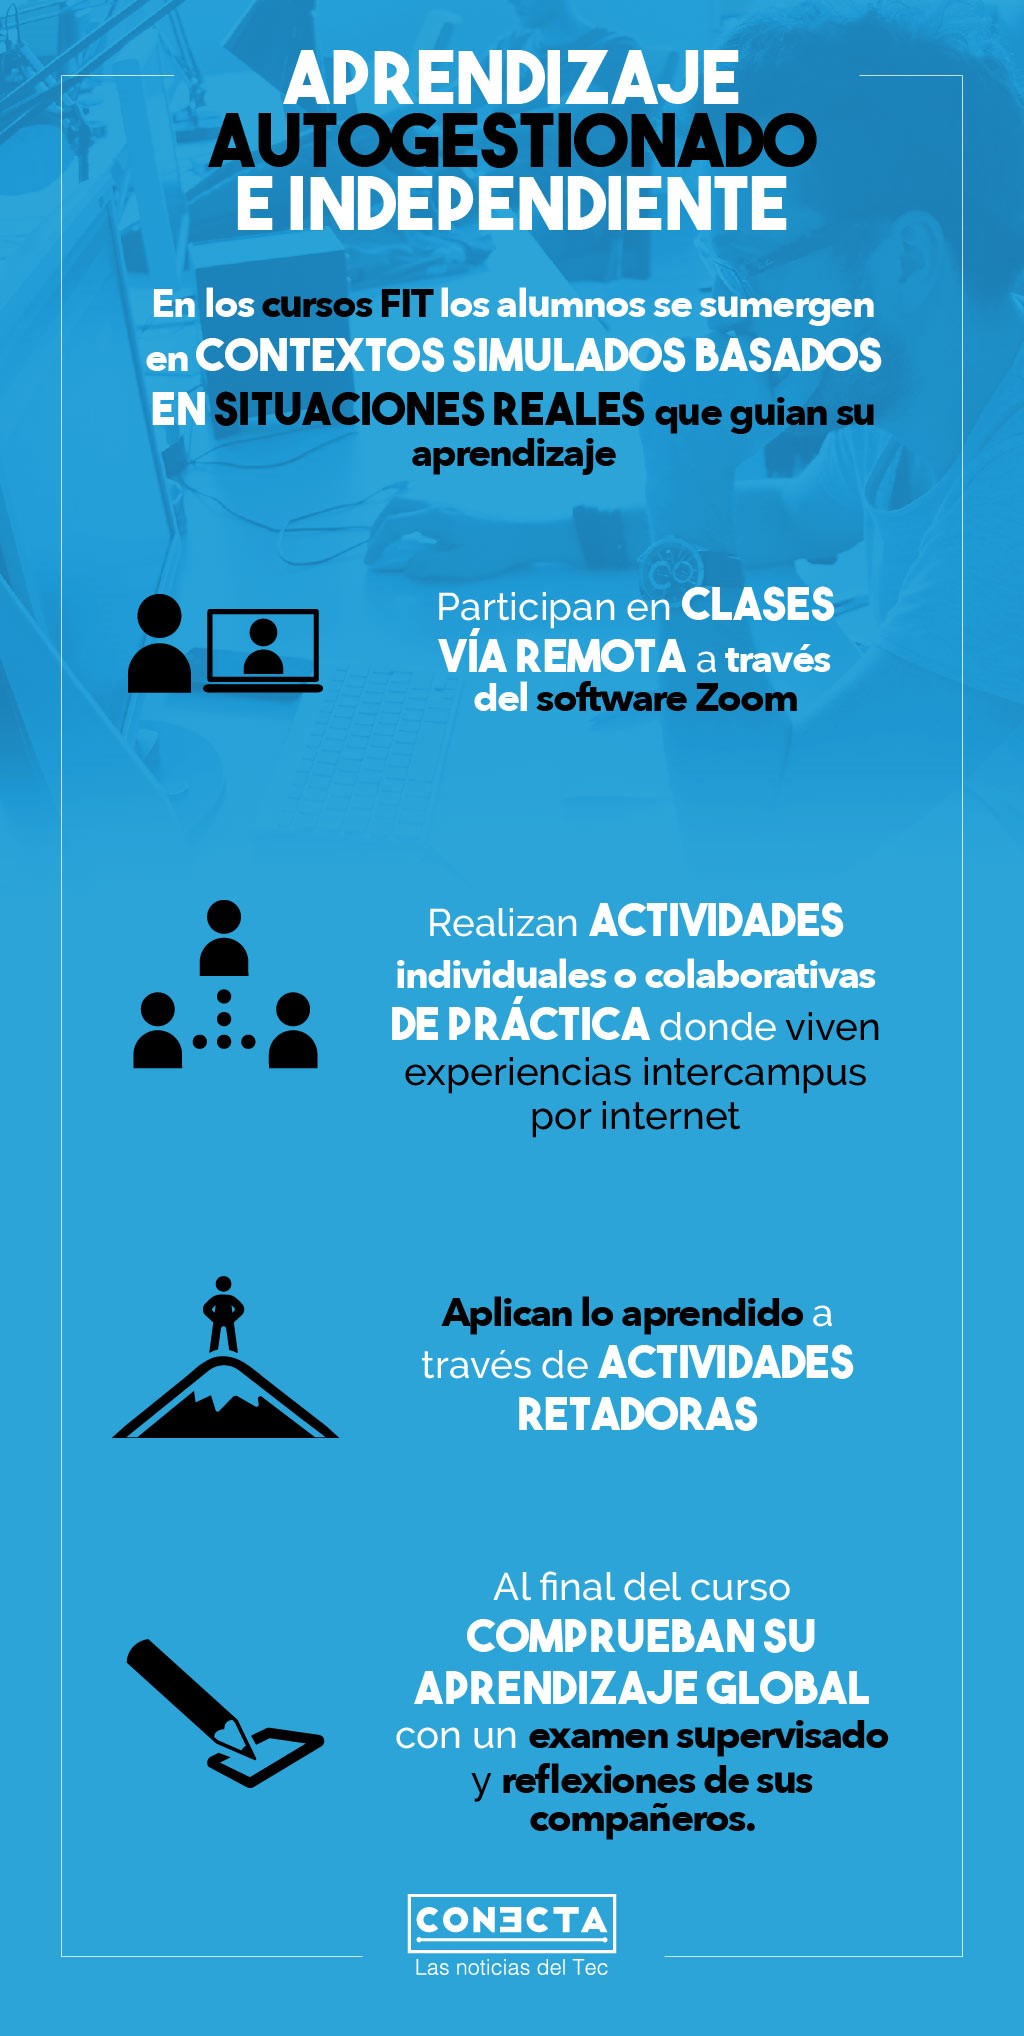 Modelo flexible de clases hace que el Tec sea reconocido en ranking |  Tecnológico de Monterrey